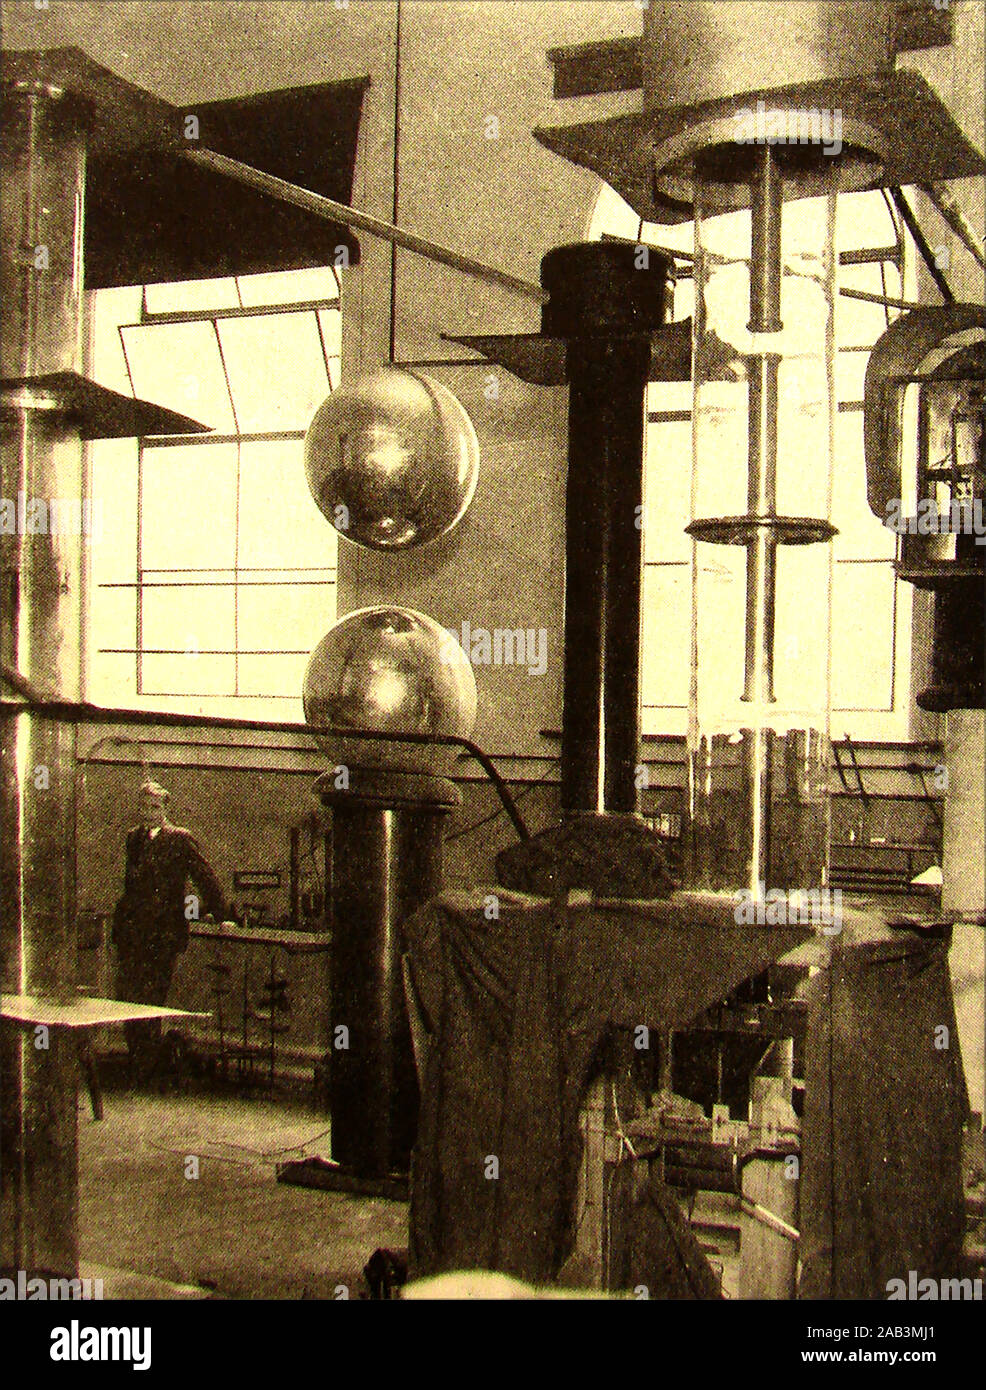 Ein Porträt von Professor John Cockroft's (Sir John Douglas Cockcroft 1897-1967) im Cavendish Laboratory in Cambridge, wo die erste Spaltung des Atoms Experimente unter Leitung von Professor Rutherford nahm. Er teilte den Nobelpreis in Physik 1951 mit Ernest Walton für die Aufspaltung der Atomkern, und war an der Entwicklung der Kernenergie eine entscheidende Rolle. Stockfoto